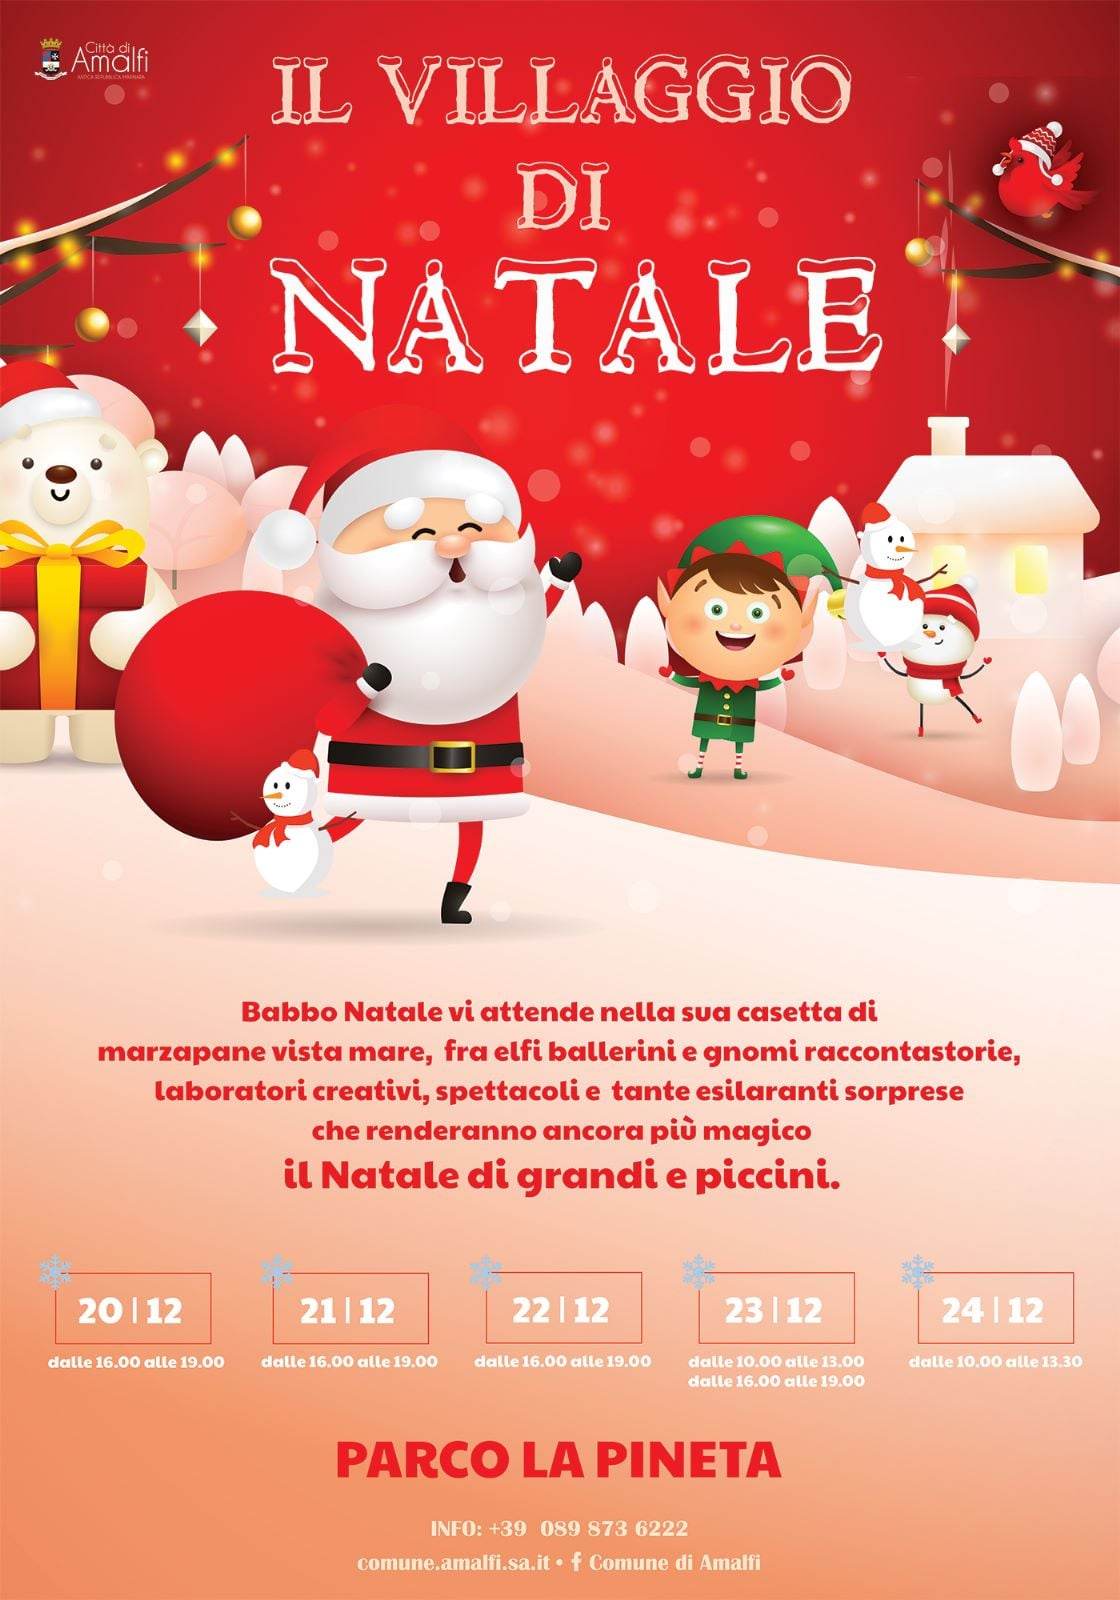 Amalfi: inaugurazione Villaggio di Natale